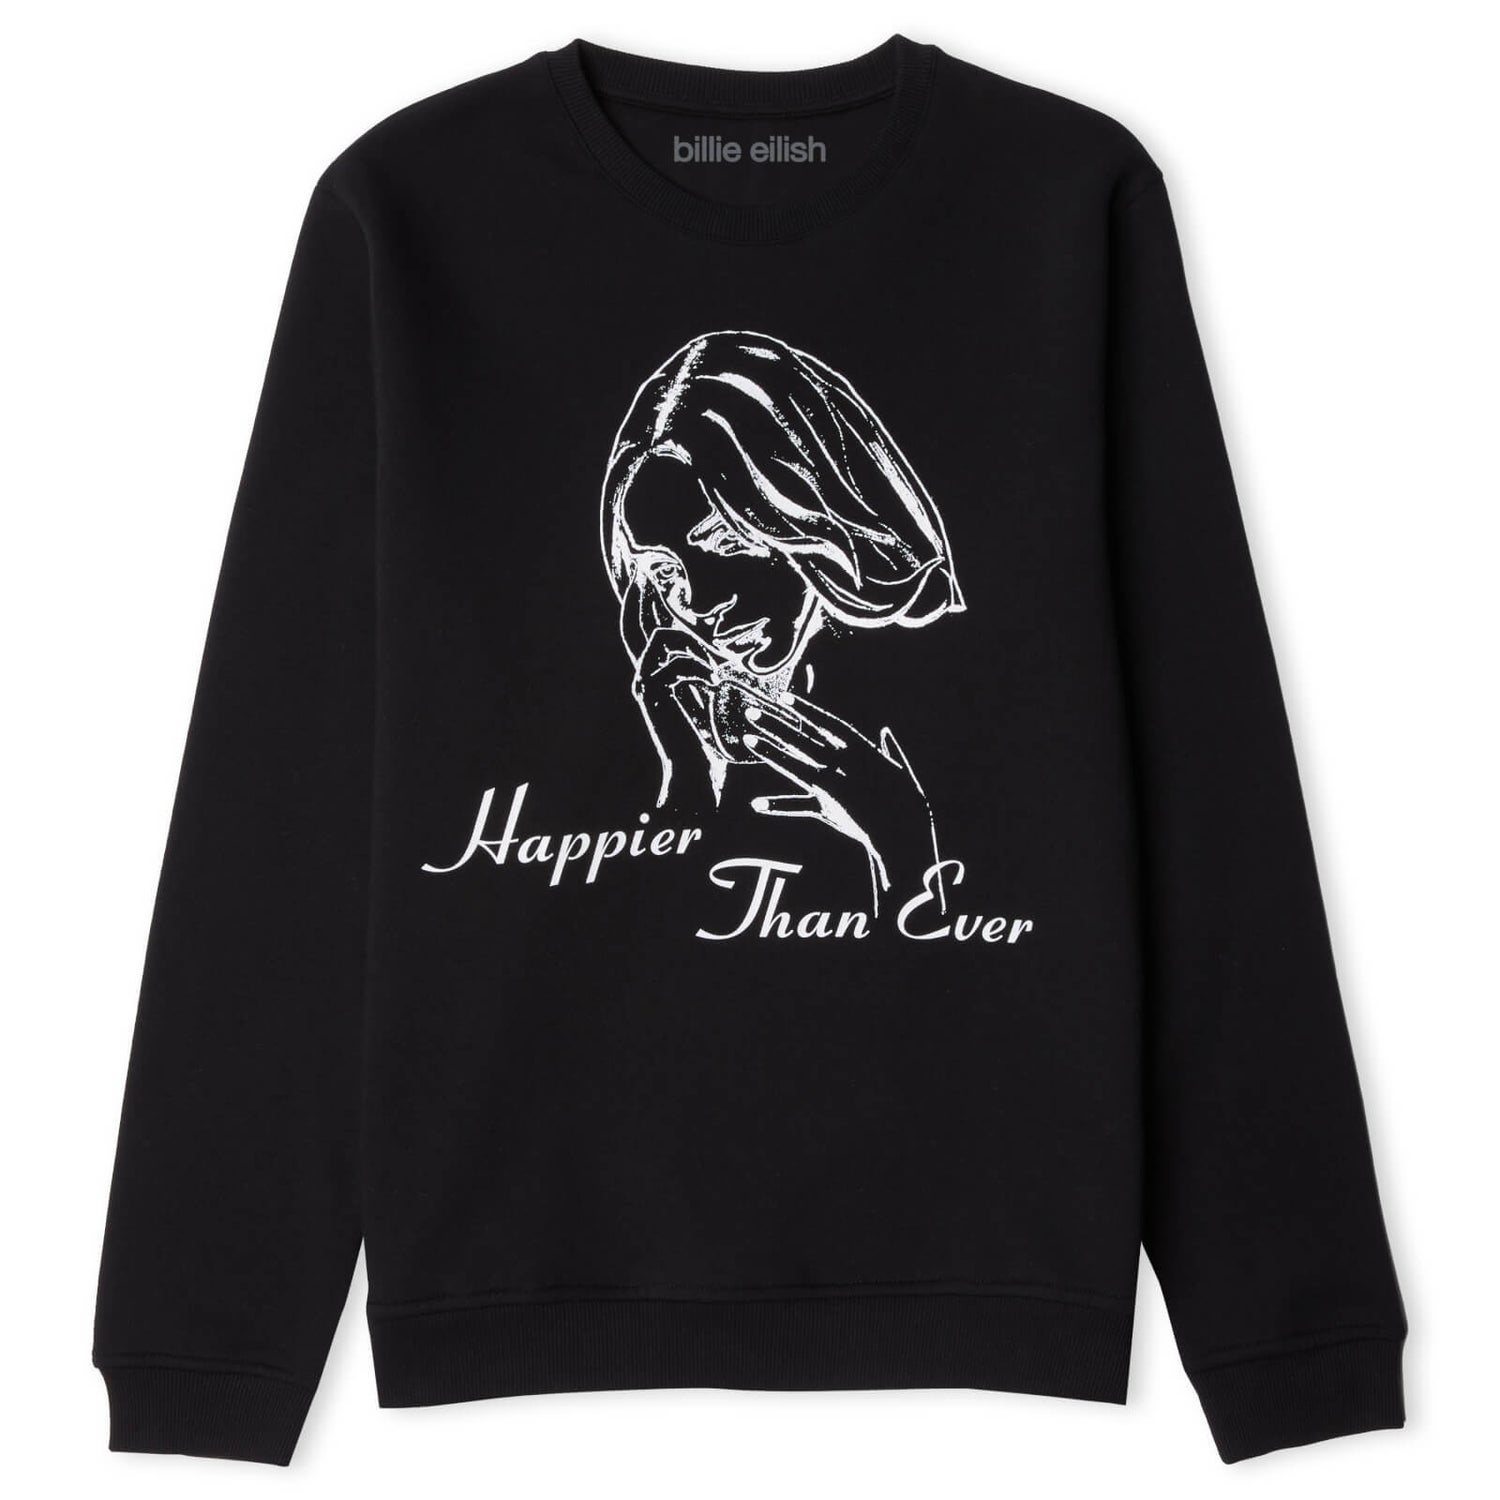 Billie Eilish Happier Than Ever Sweatshirt - Black - XL - Zwart